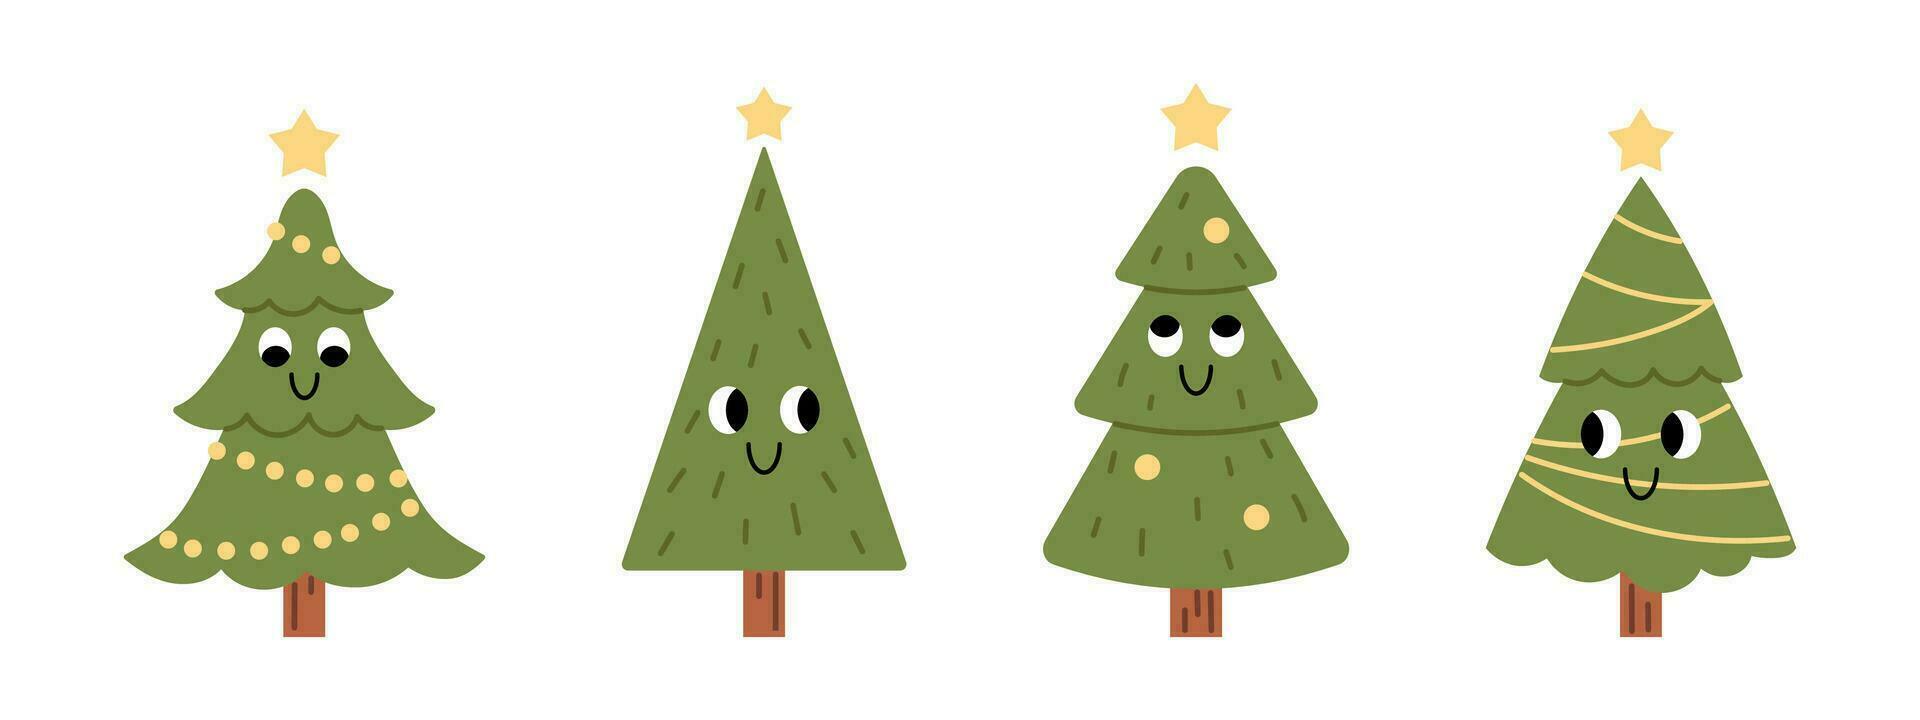 vektor uppsättning av annorlunda söt leende jul träd. rolig barnslig gran träd med kransar och bollar. ny år och jul firande. samling av jul träd med ansikten i platt design.